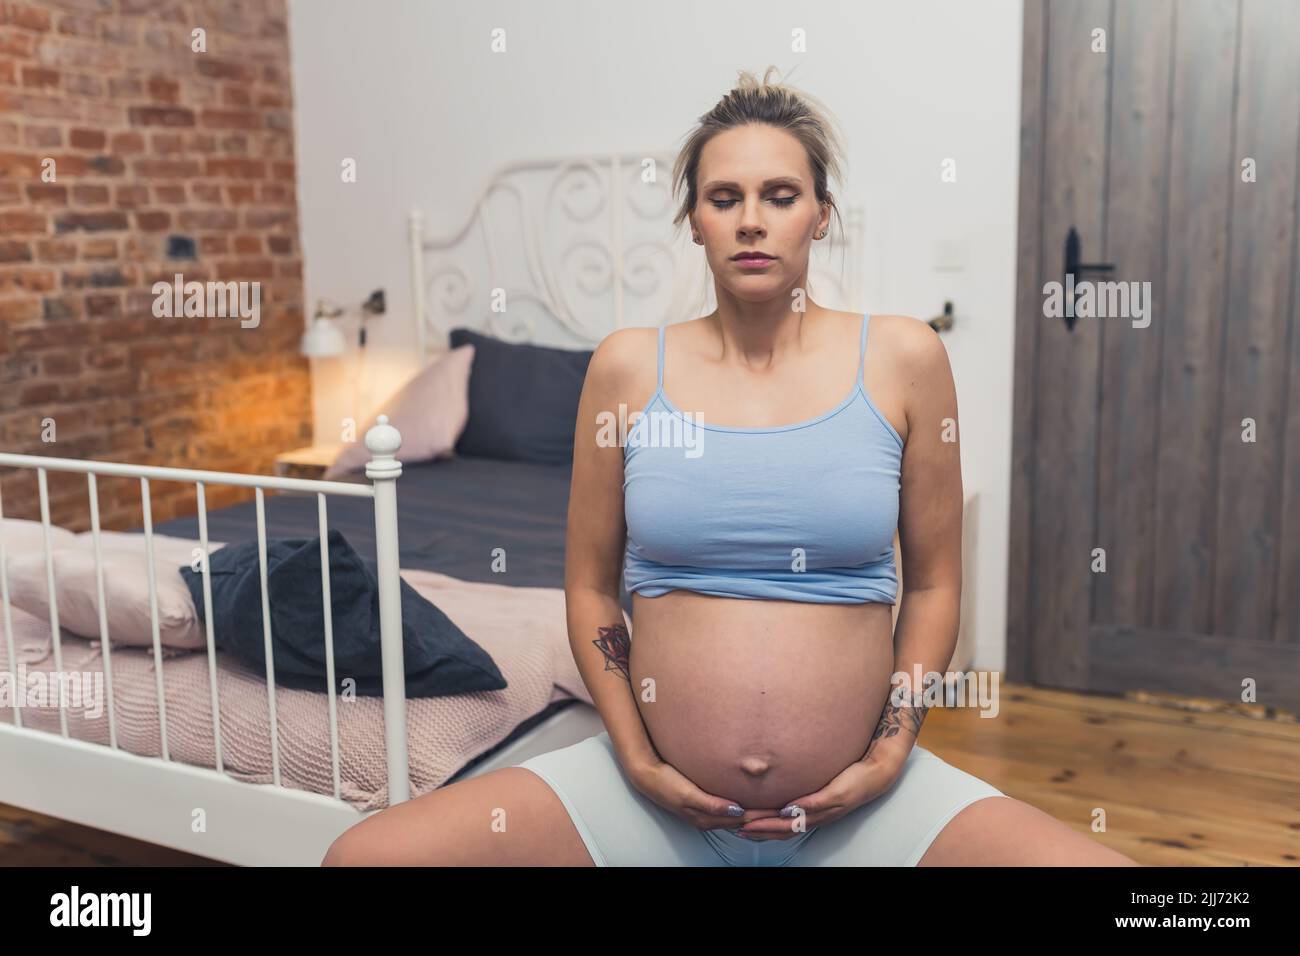 Giovane madre caucasica incinta che tocca la sua pancia e si esercita su una palla fitness. Camera da letto interna. Foto di alta qualità Foto Stock